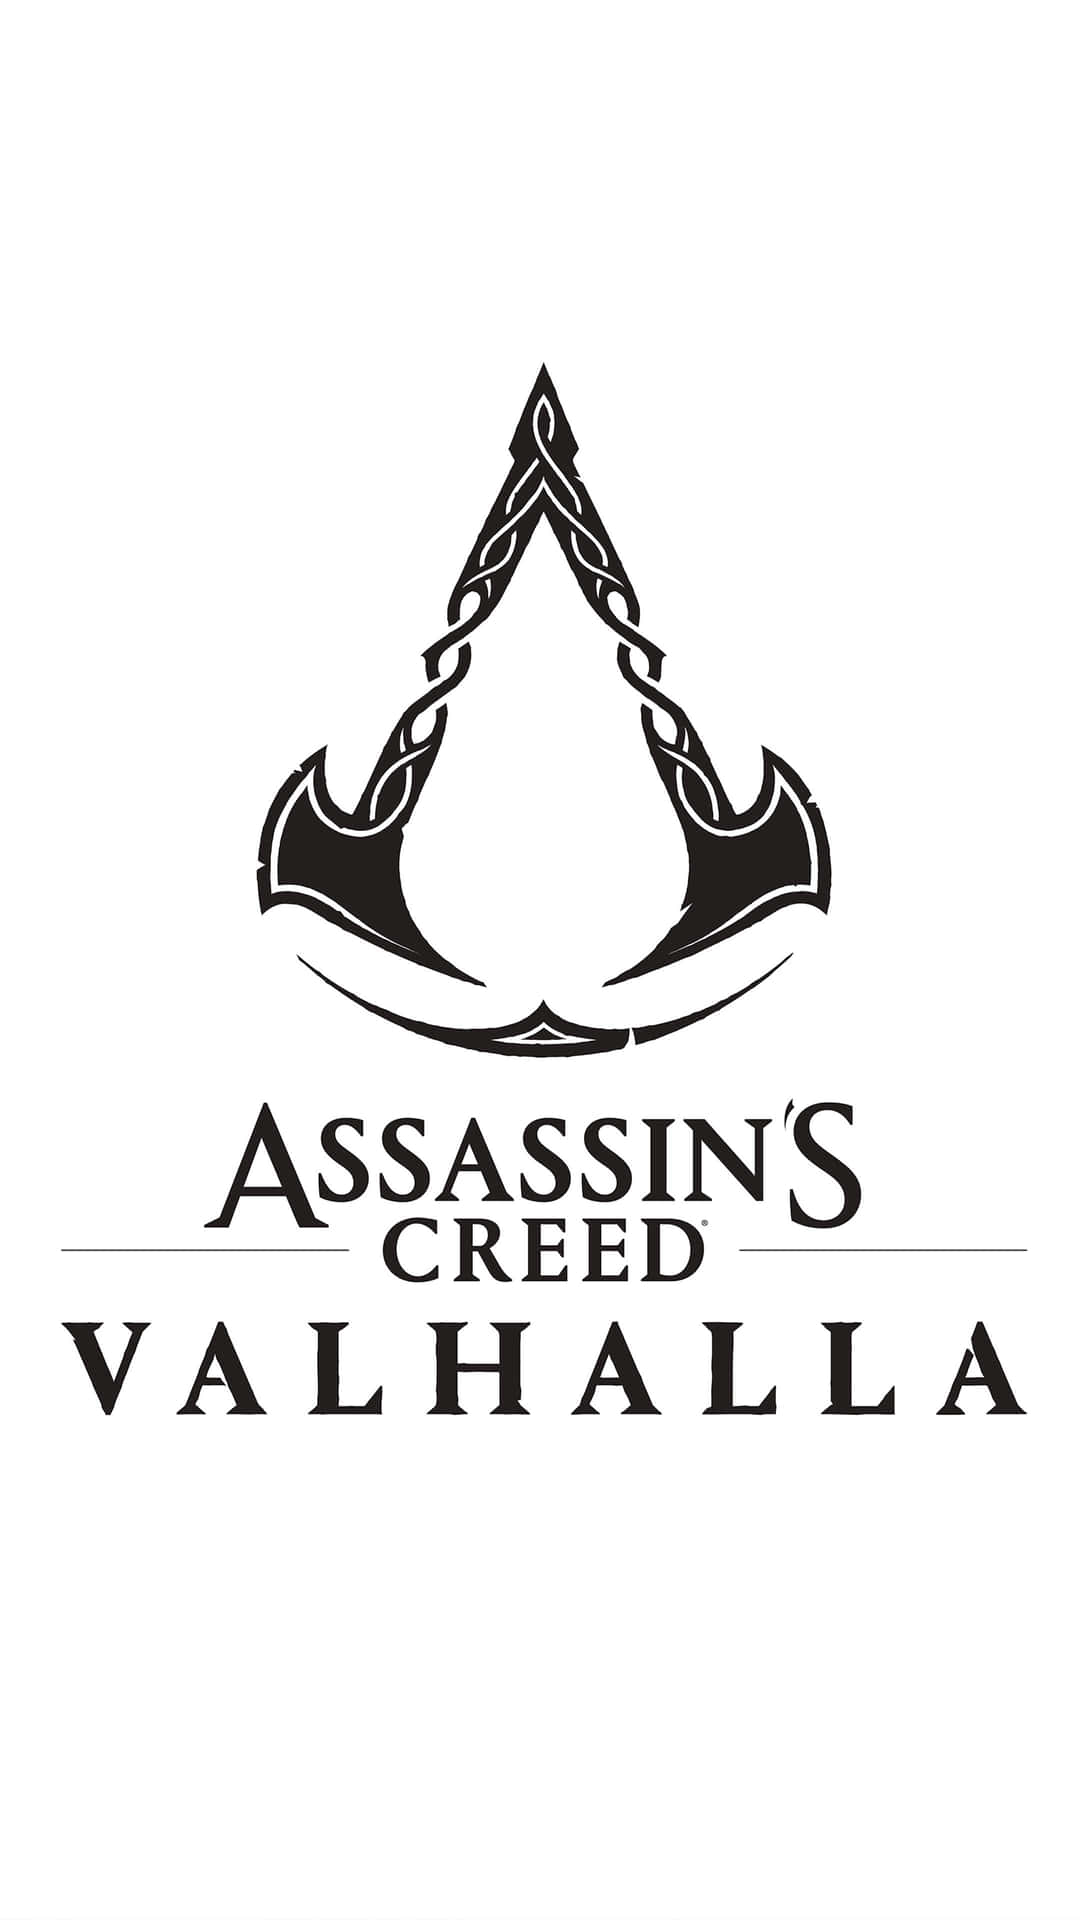 4khintergrundbild Von Assassin's Creed Valhalla Spielzeichen